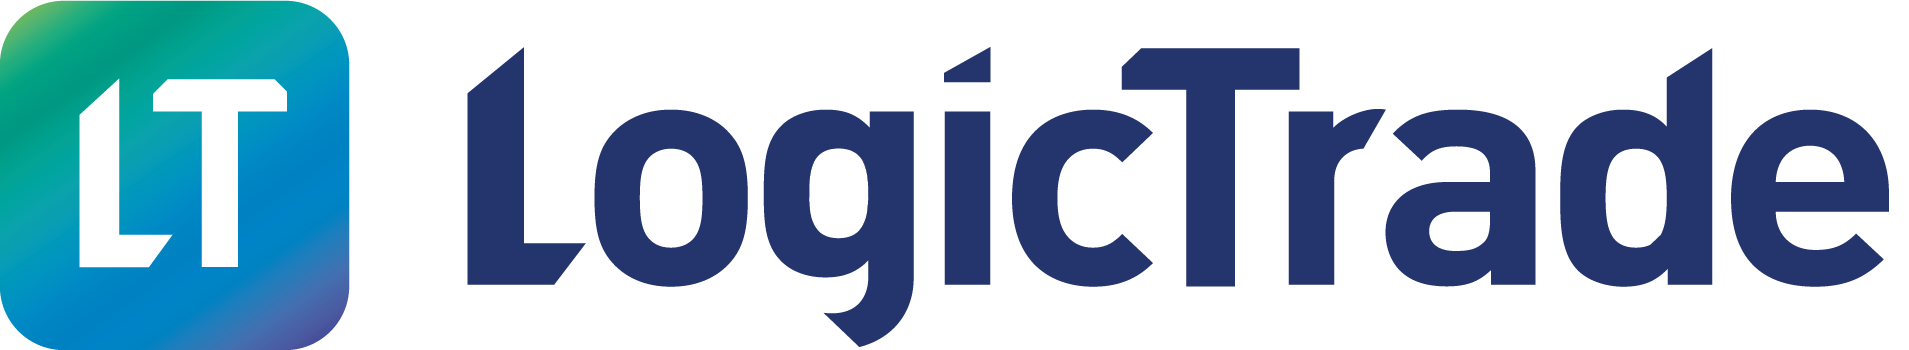 Logo-Logictrade-2020 - zonder ondertitel